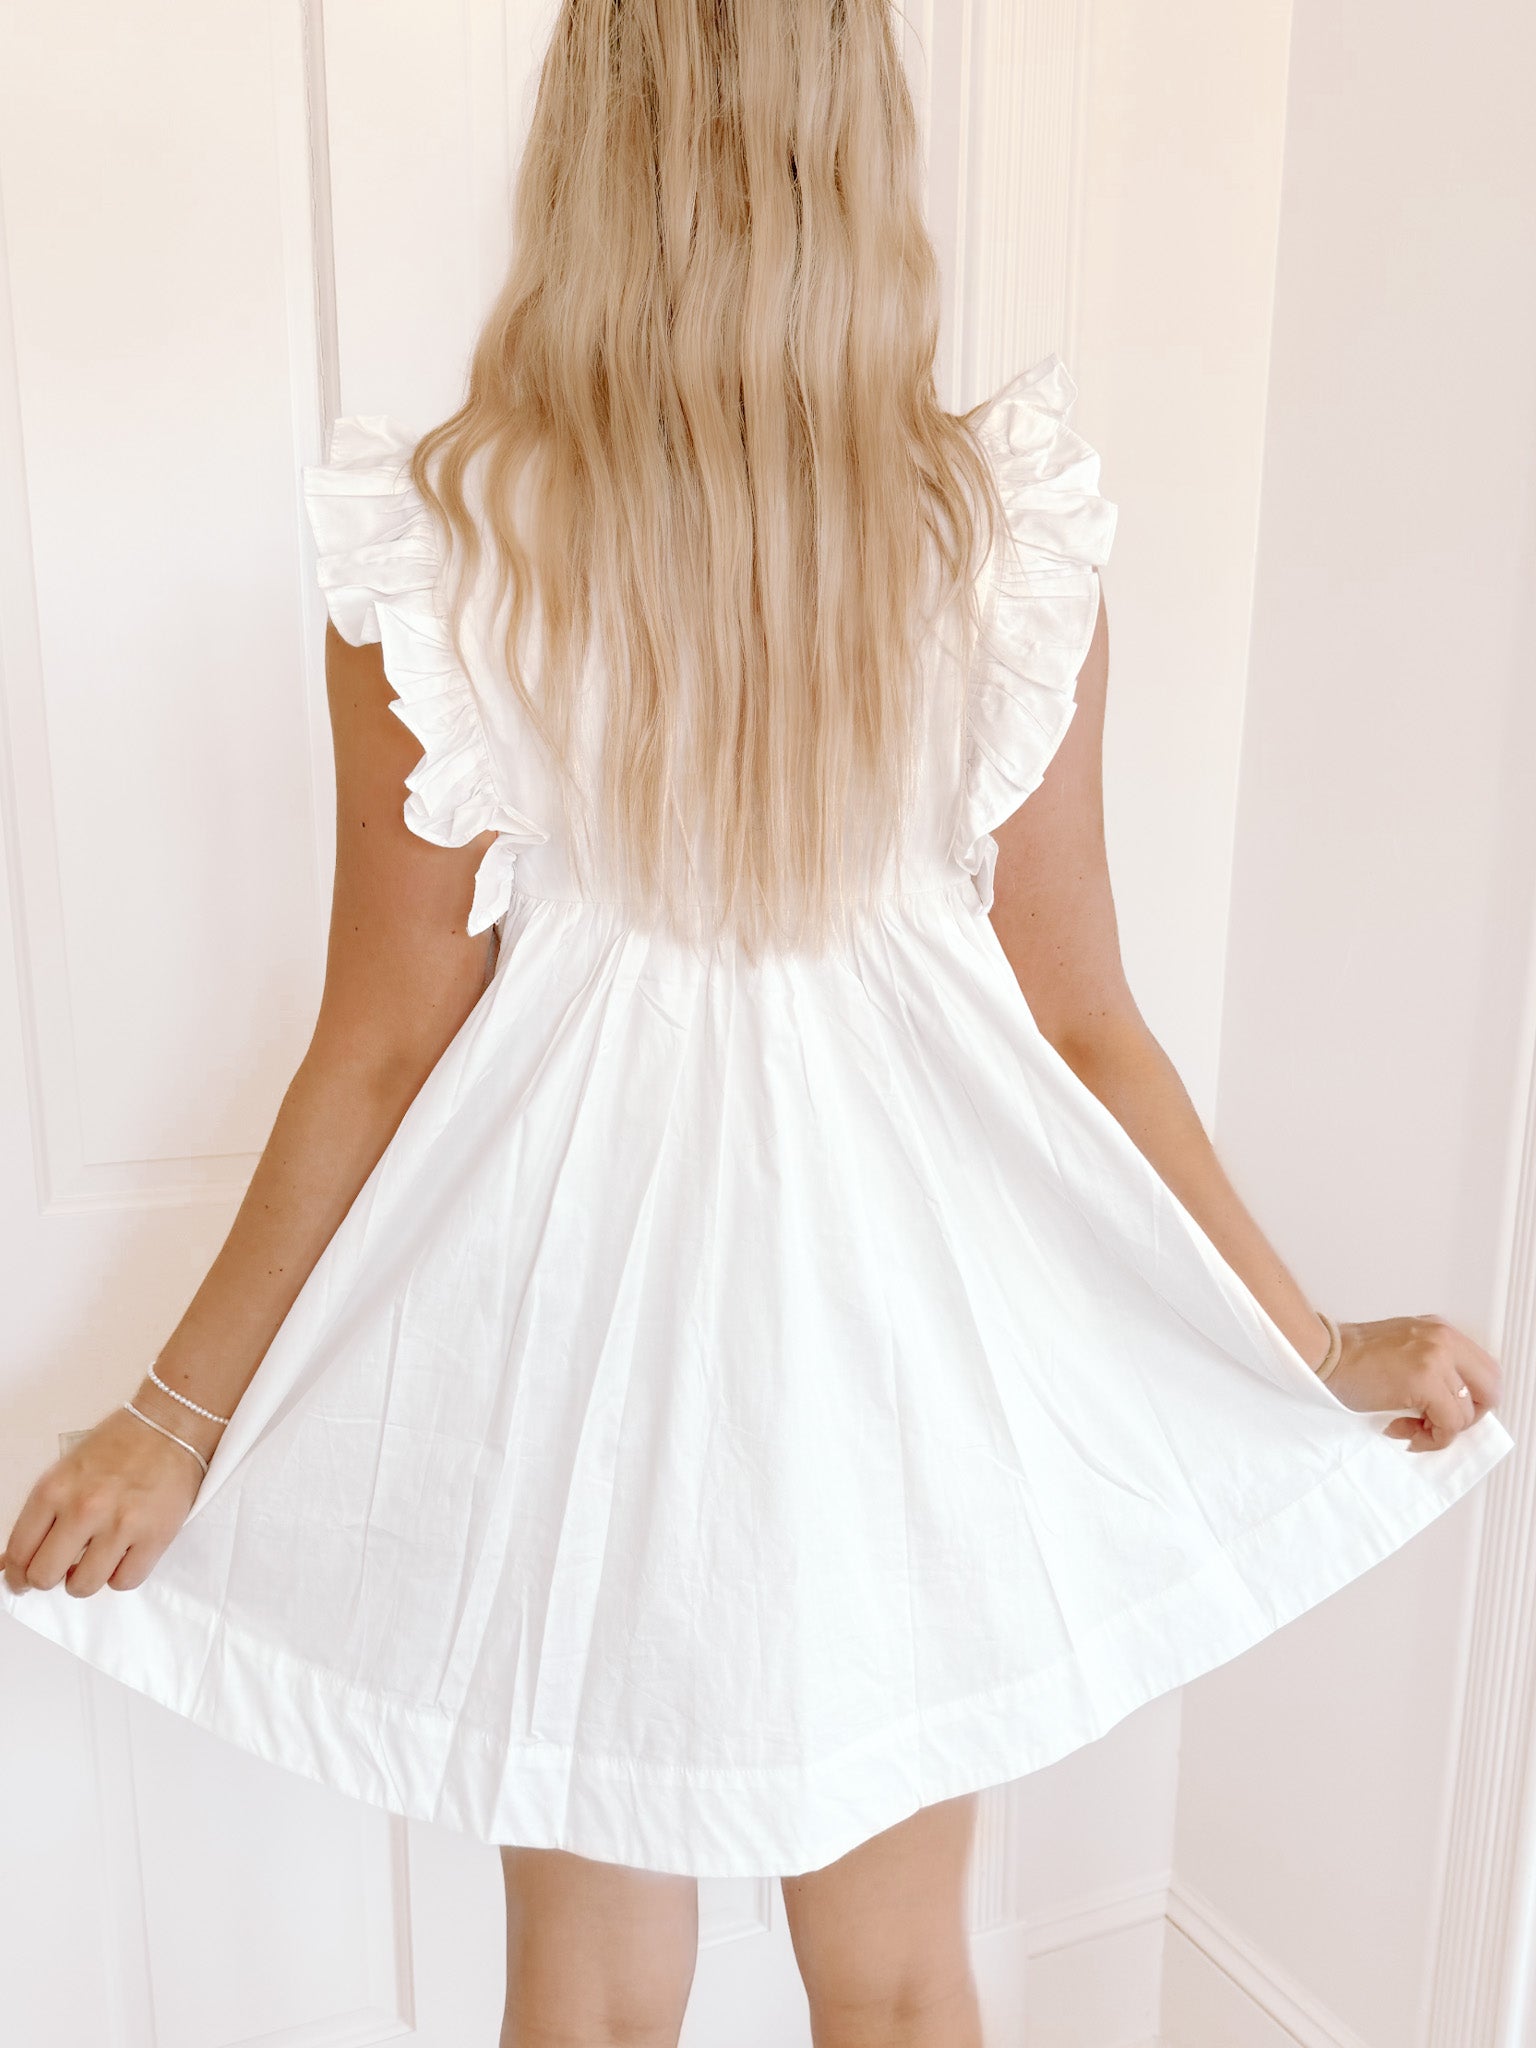 Debut Darling Preppy White Dress | sassyshortcake.com | Sassy Shortcake